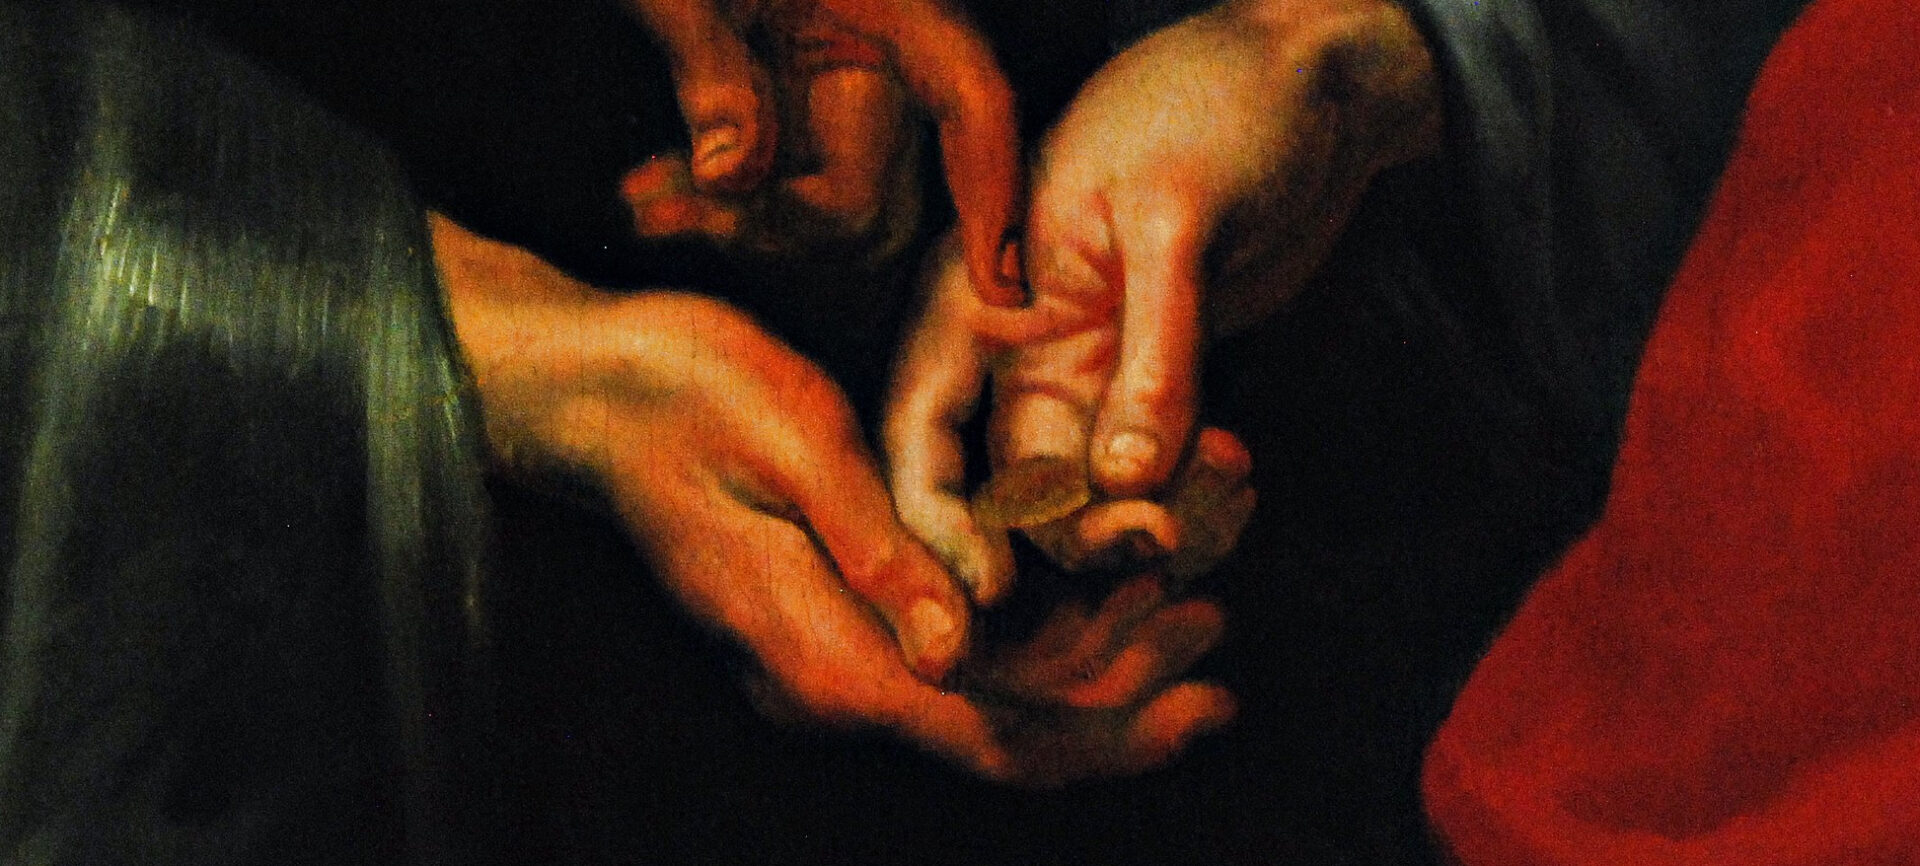 Détail du tableau "Le Christ et le denier de César", par Rubens, 17e s. | melina1965/Flickr/CC BY-NC-SA 2.0